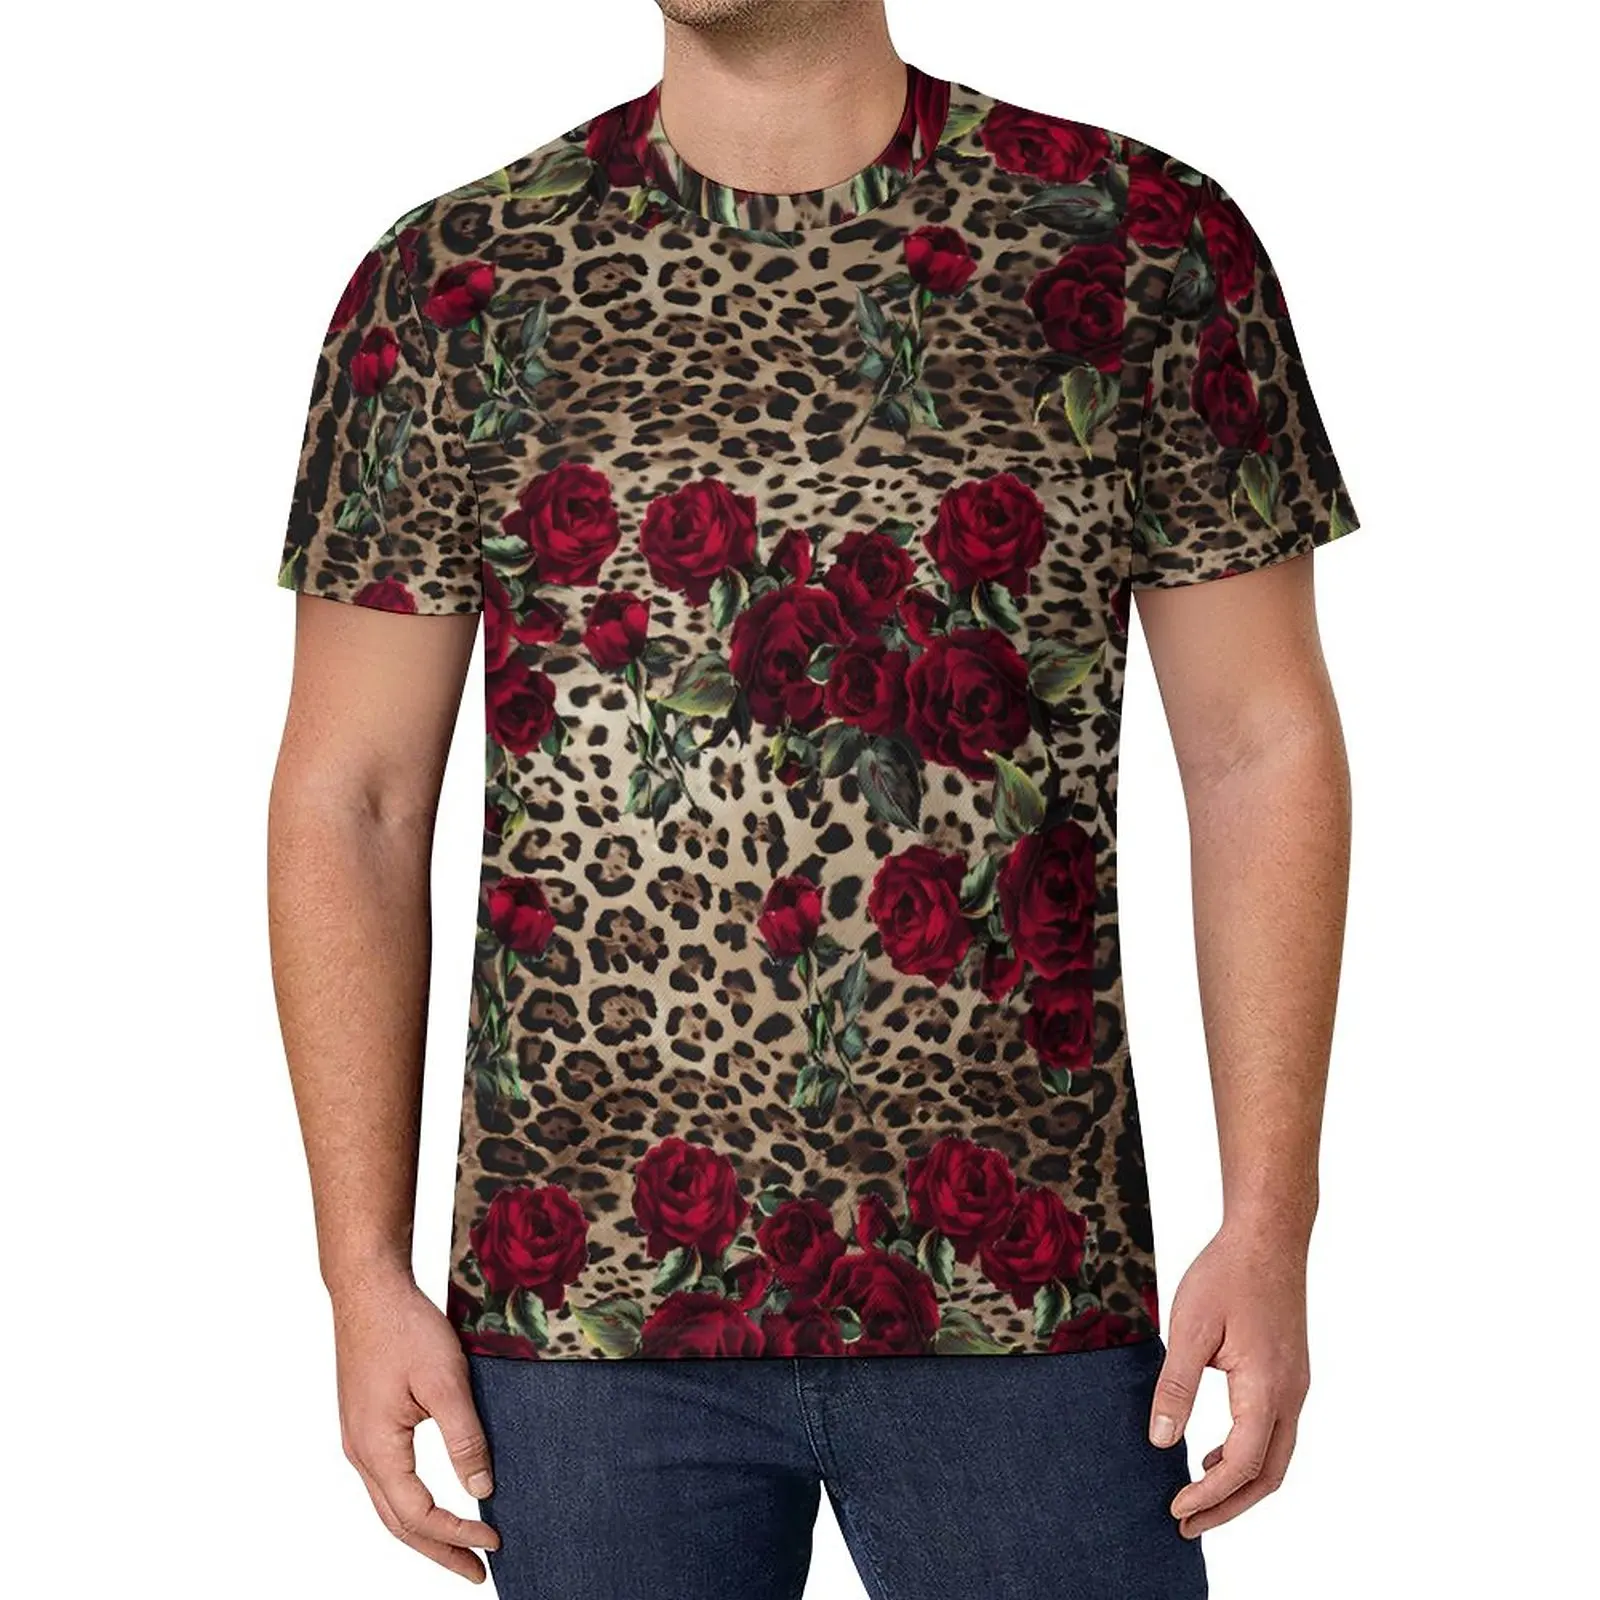 

Футболка мужская с цветочным леопардовым принтом, Базовая рубашка в стиле ретро, топ с коротким рукавом и принтом красных роз, большие разме...